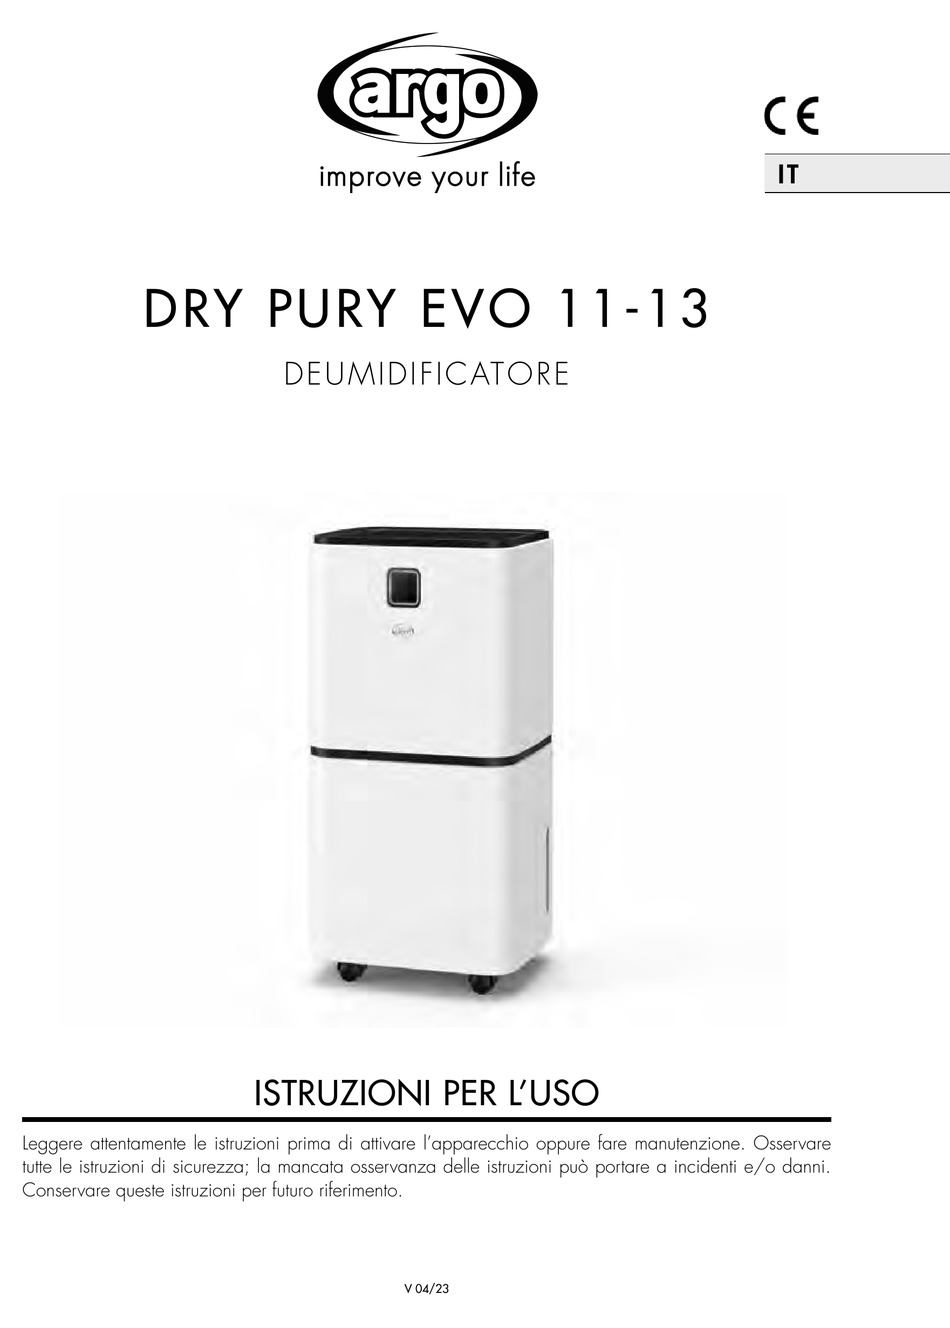 Deumidificatore Argo Dry Pury Evo 11